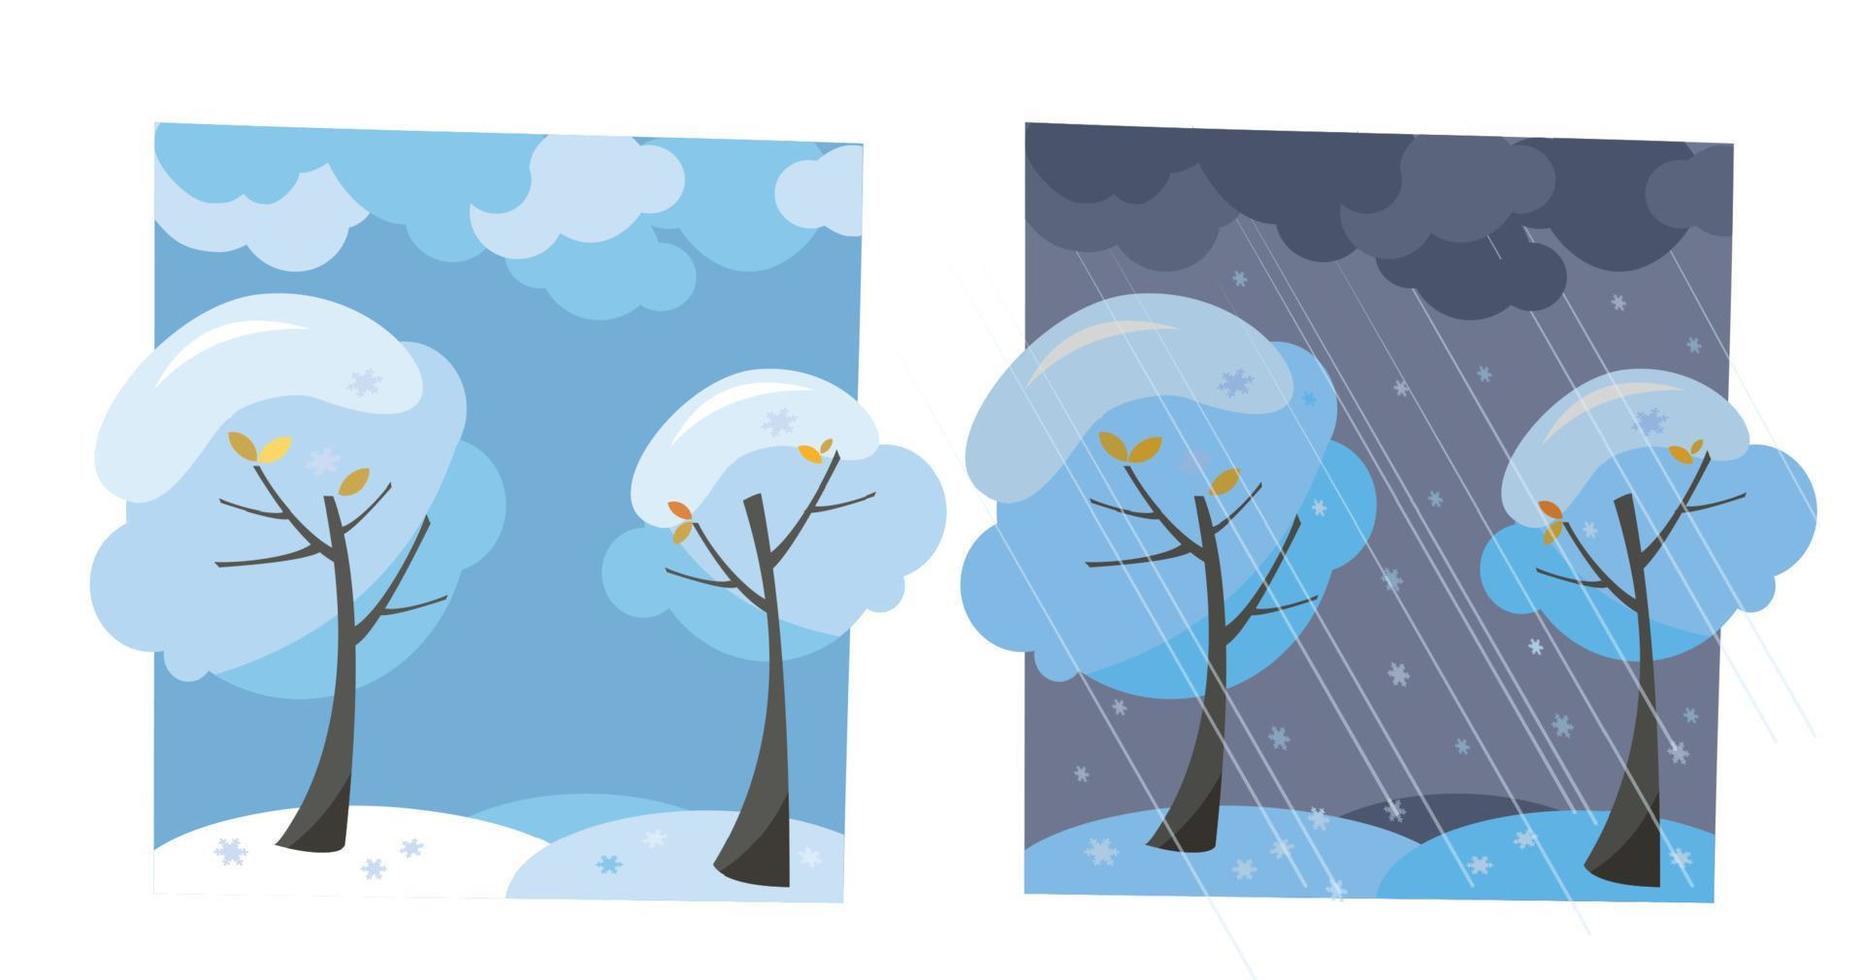 vinter- snö träd med flygande snöflingor. uppsättning av två icke-parallell bilder med en se av Bra solig väder och mörk kväll. platt tecknad serie vektor illustration. träd med runda krona under moln himmel